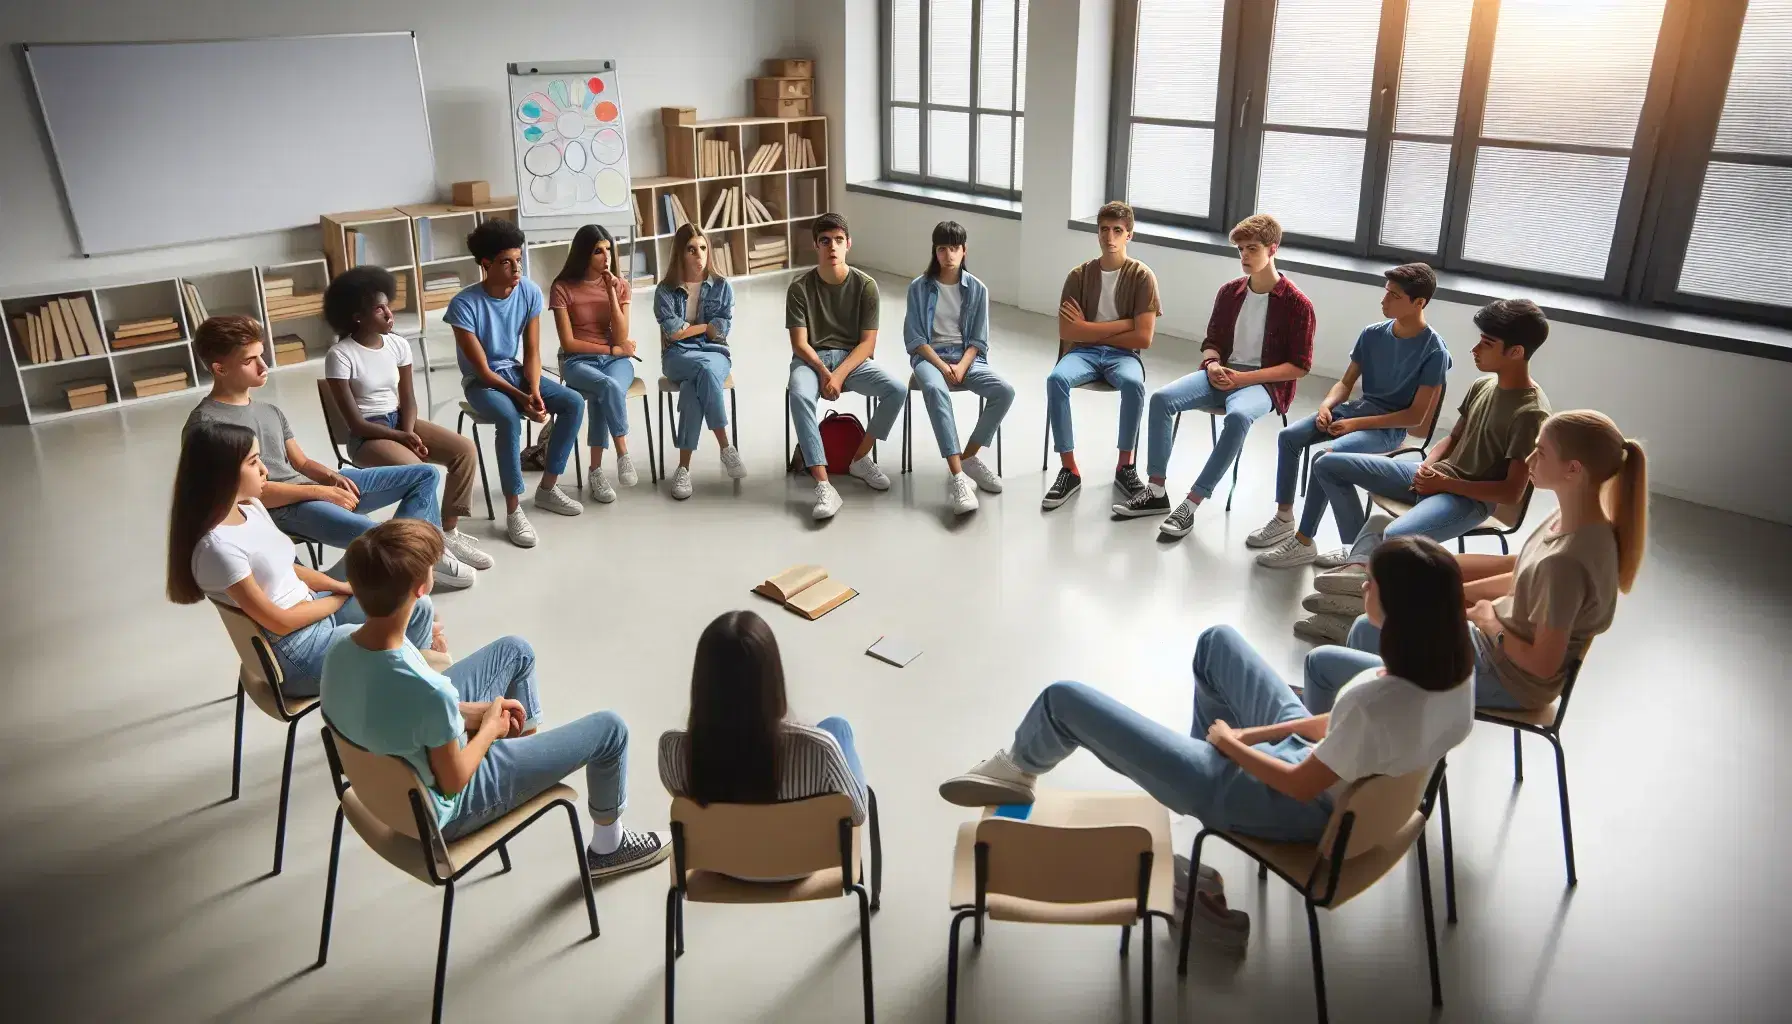 Gruppo eterogeneo di adolescenti seduti in cerchio su sedie in aula, impegnati in un dibattito senza libri o quaderni, in un ambiente luminoso.